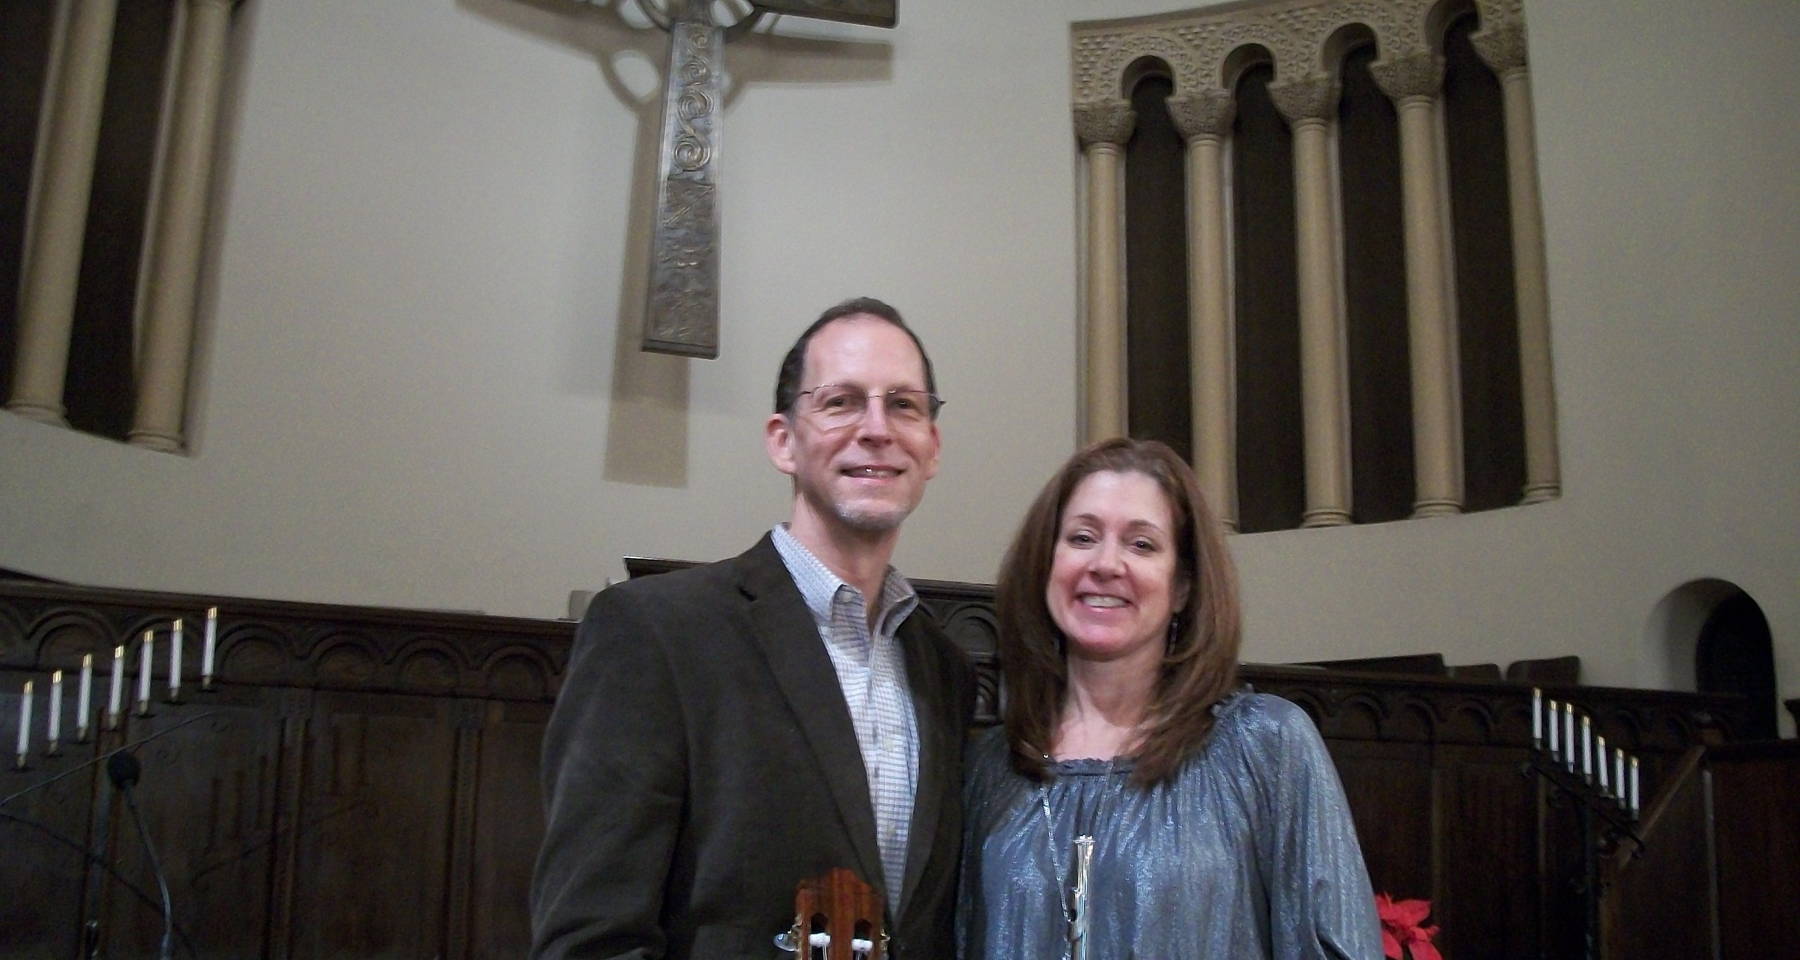 Classical Guitar Project presents Daniel Roest & Francesca Anderson